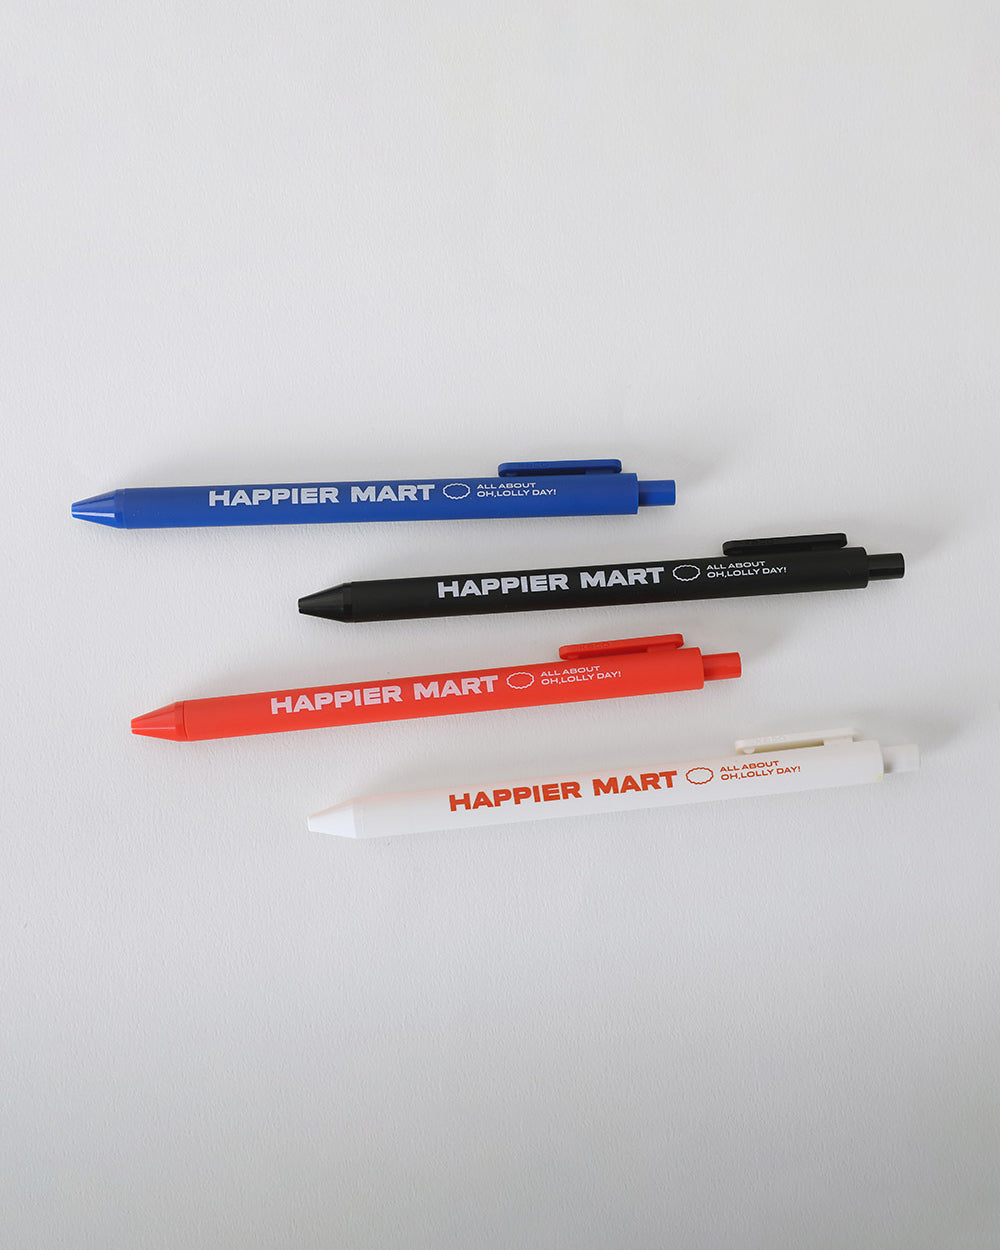 [Pen] HAPPIER MART pen